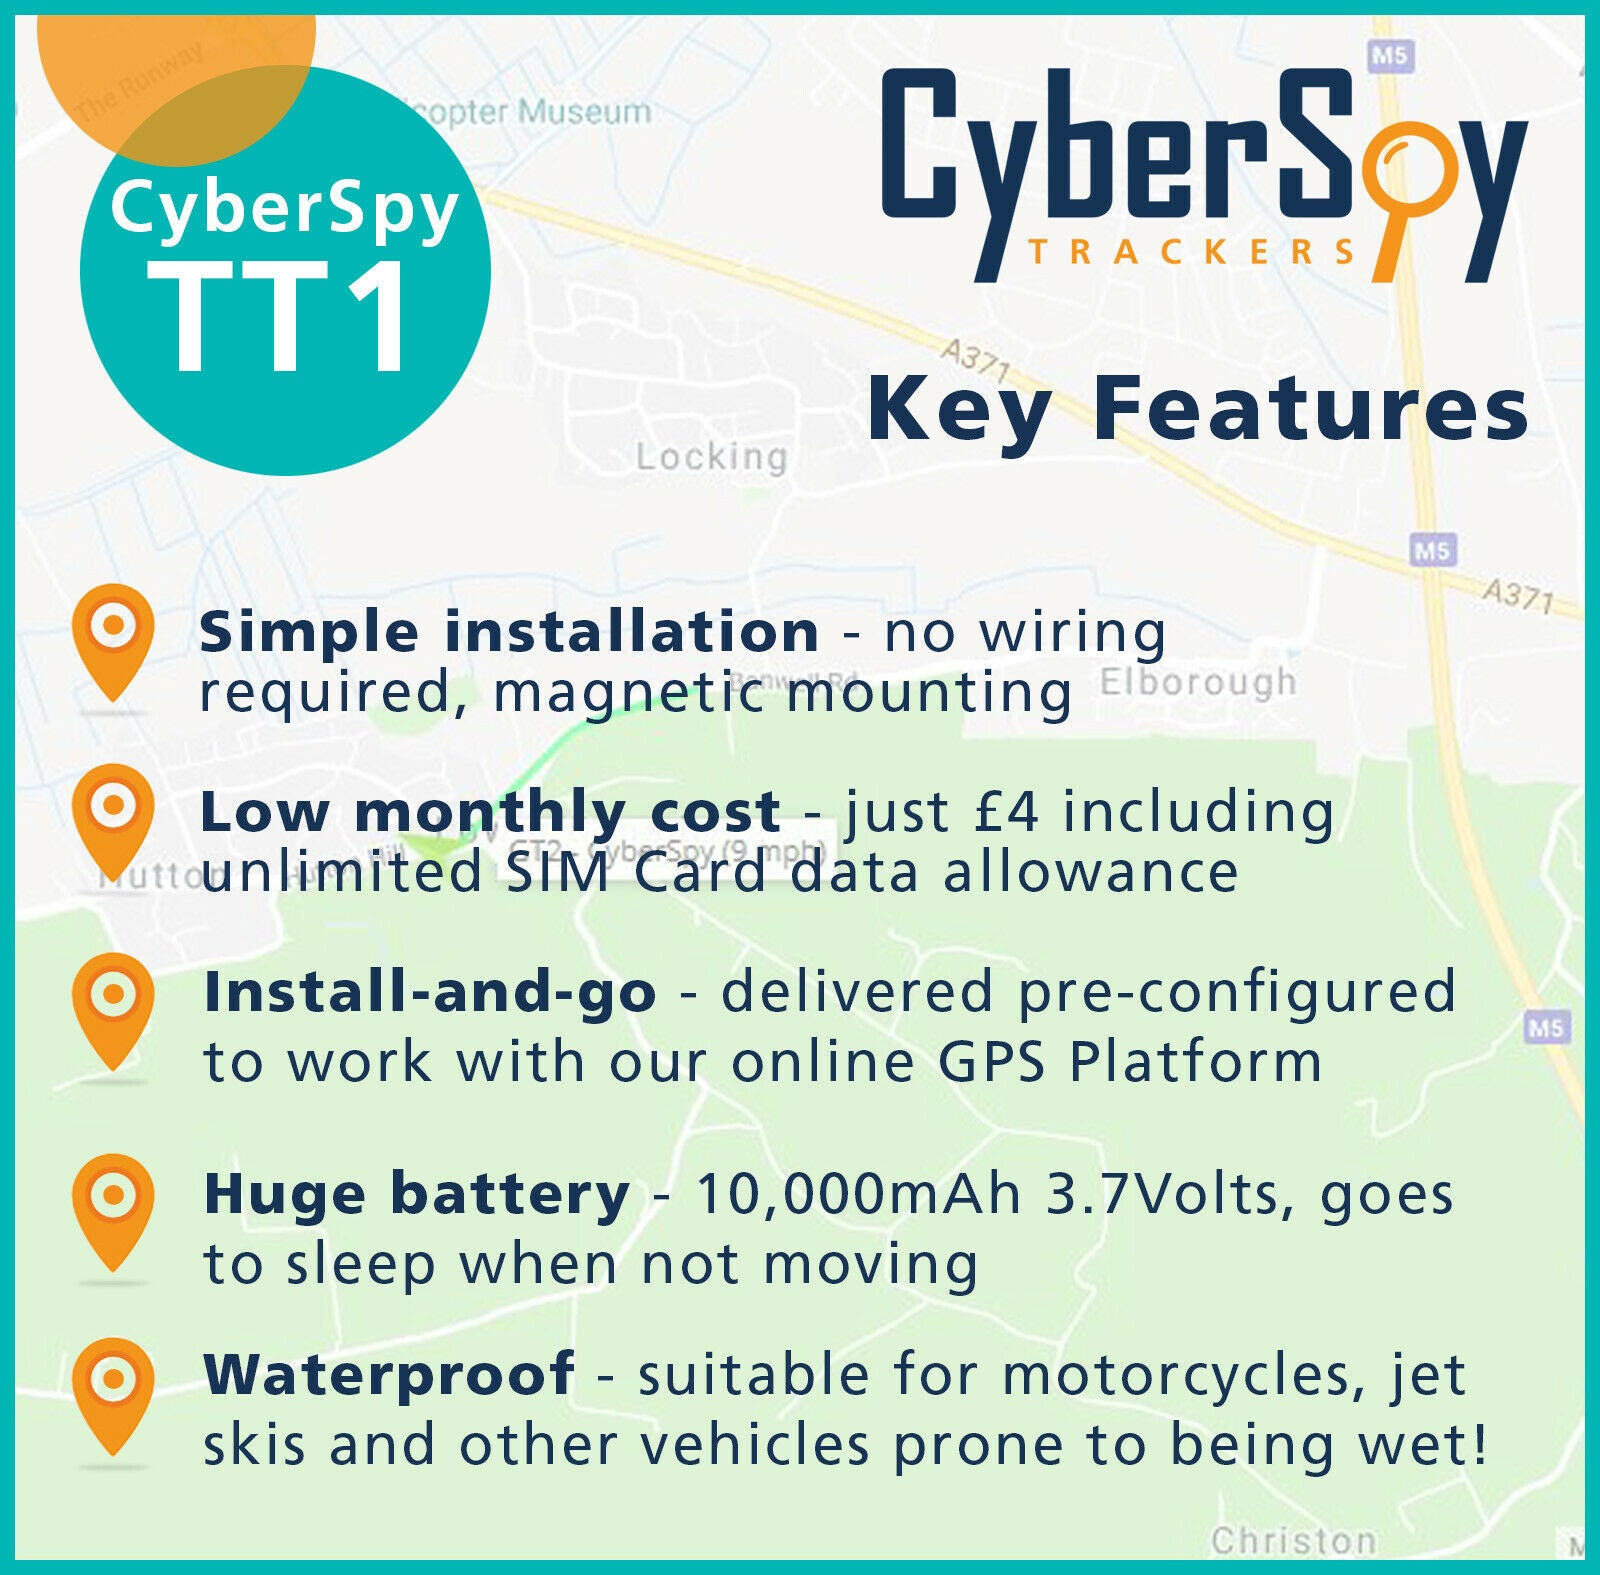 CyberSpy TT2